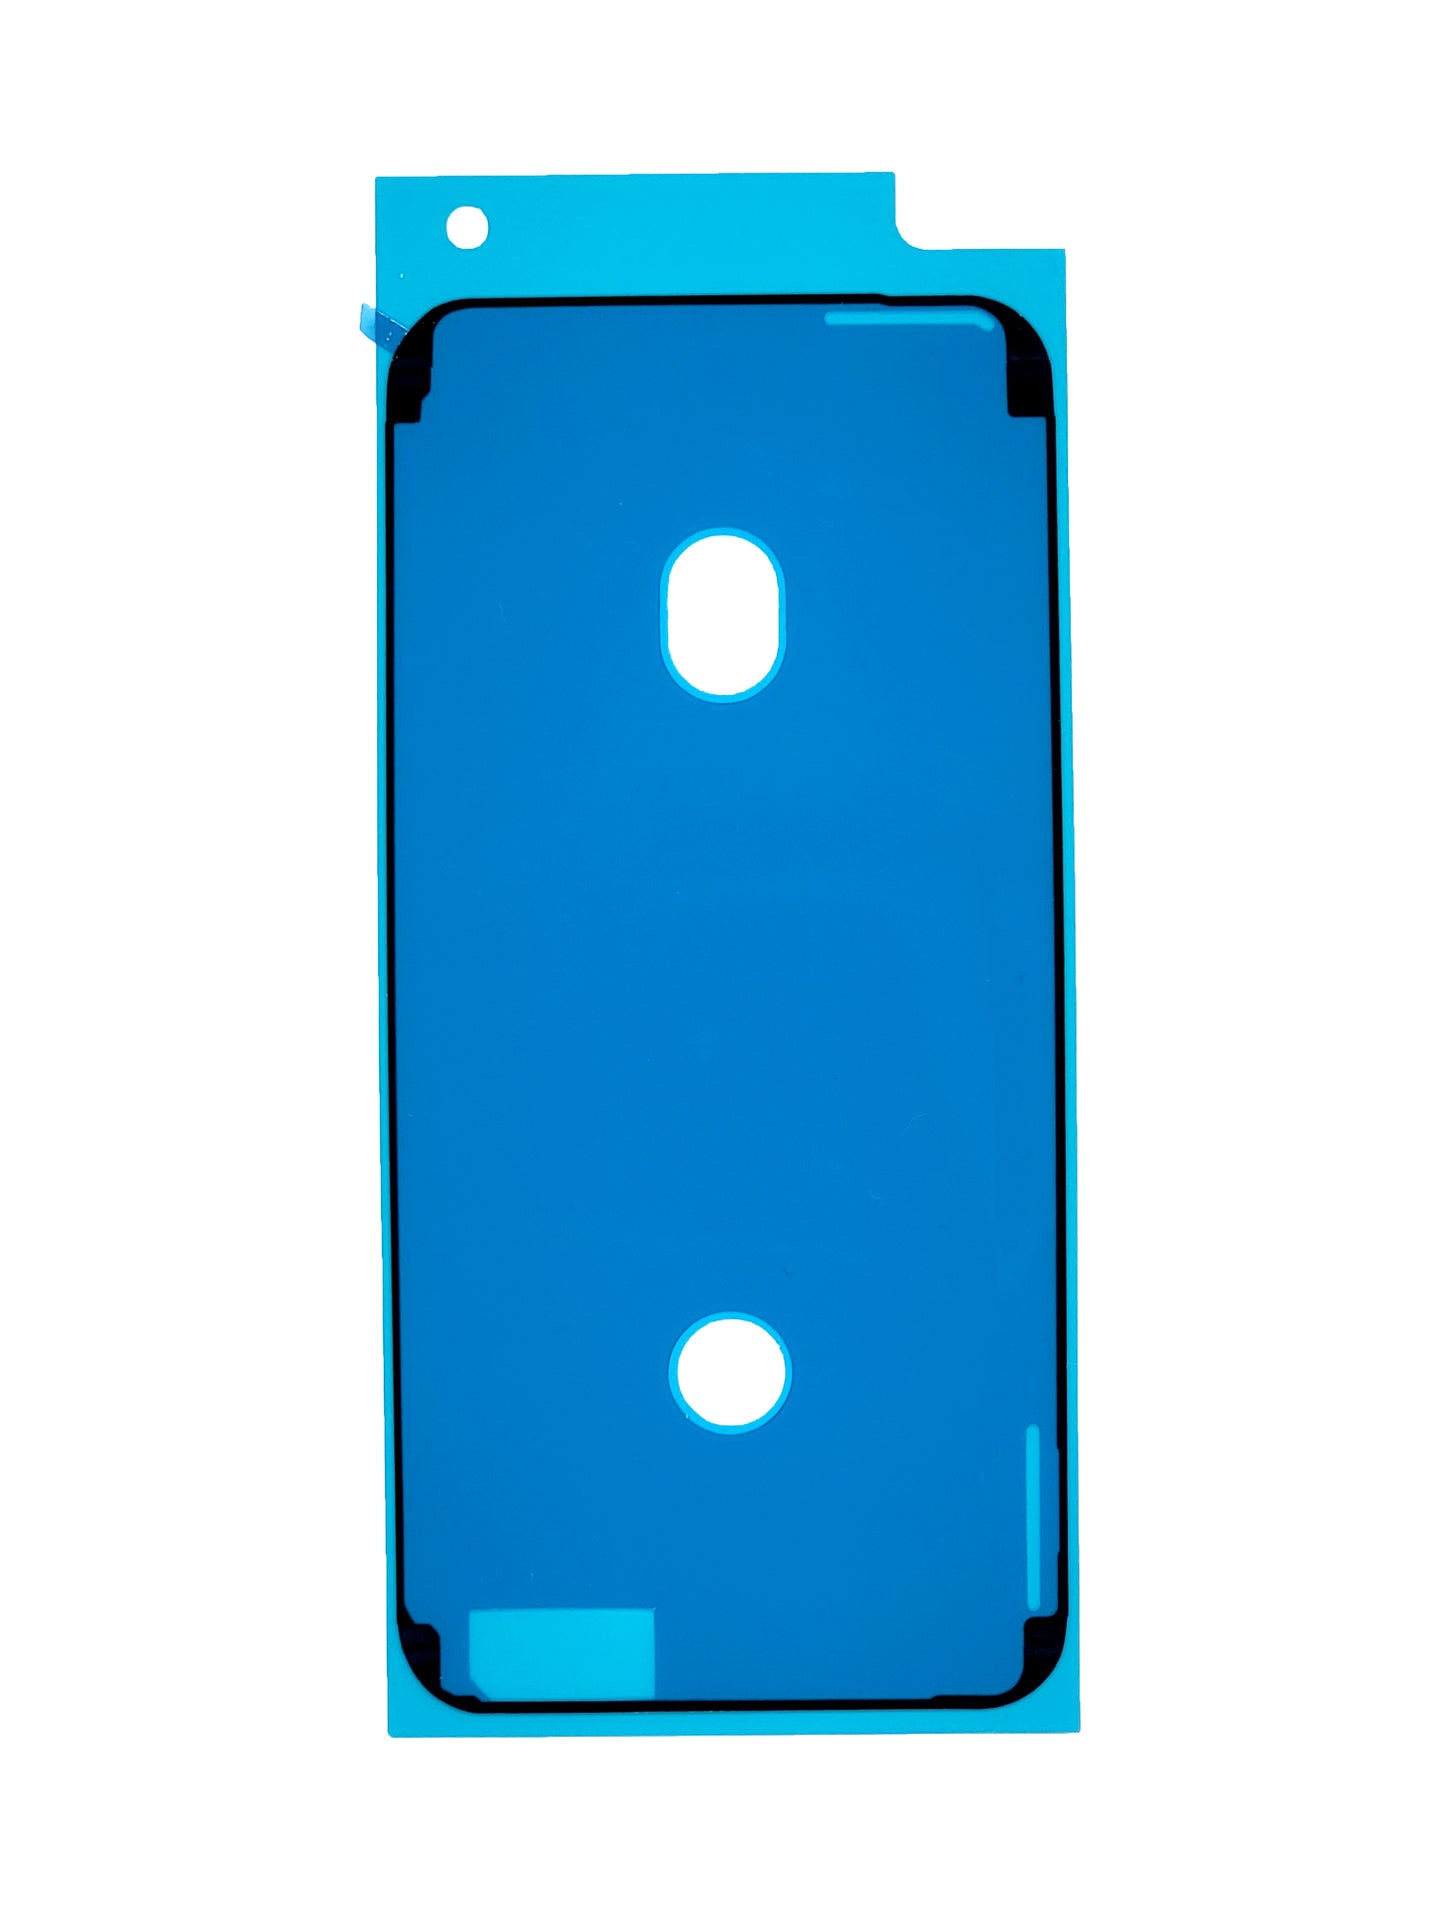 iPhone 6S Waterproof LCD Adhesive Seal (Black)